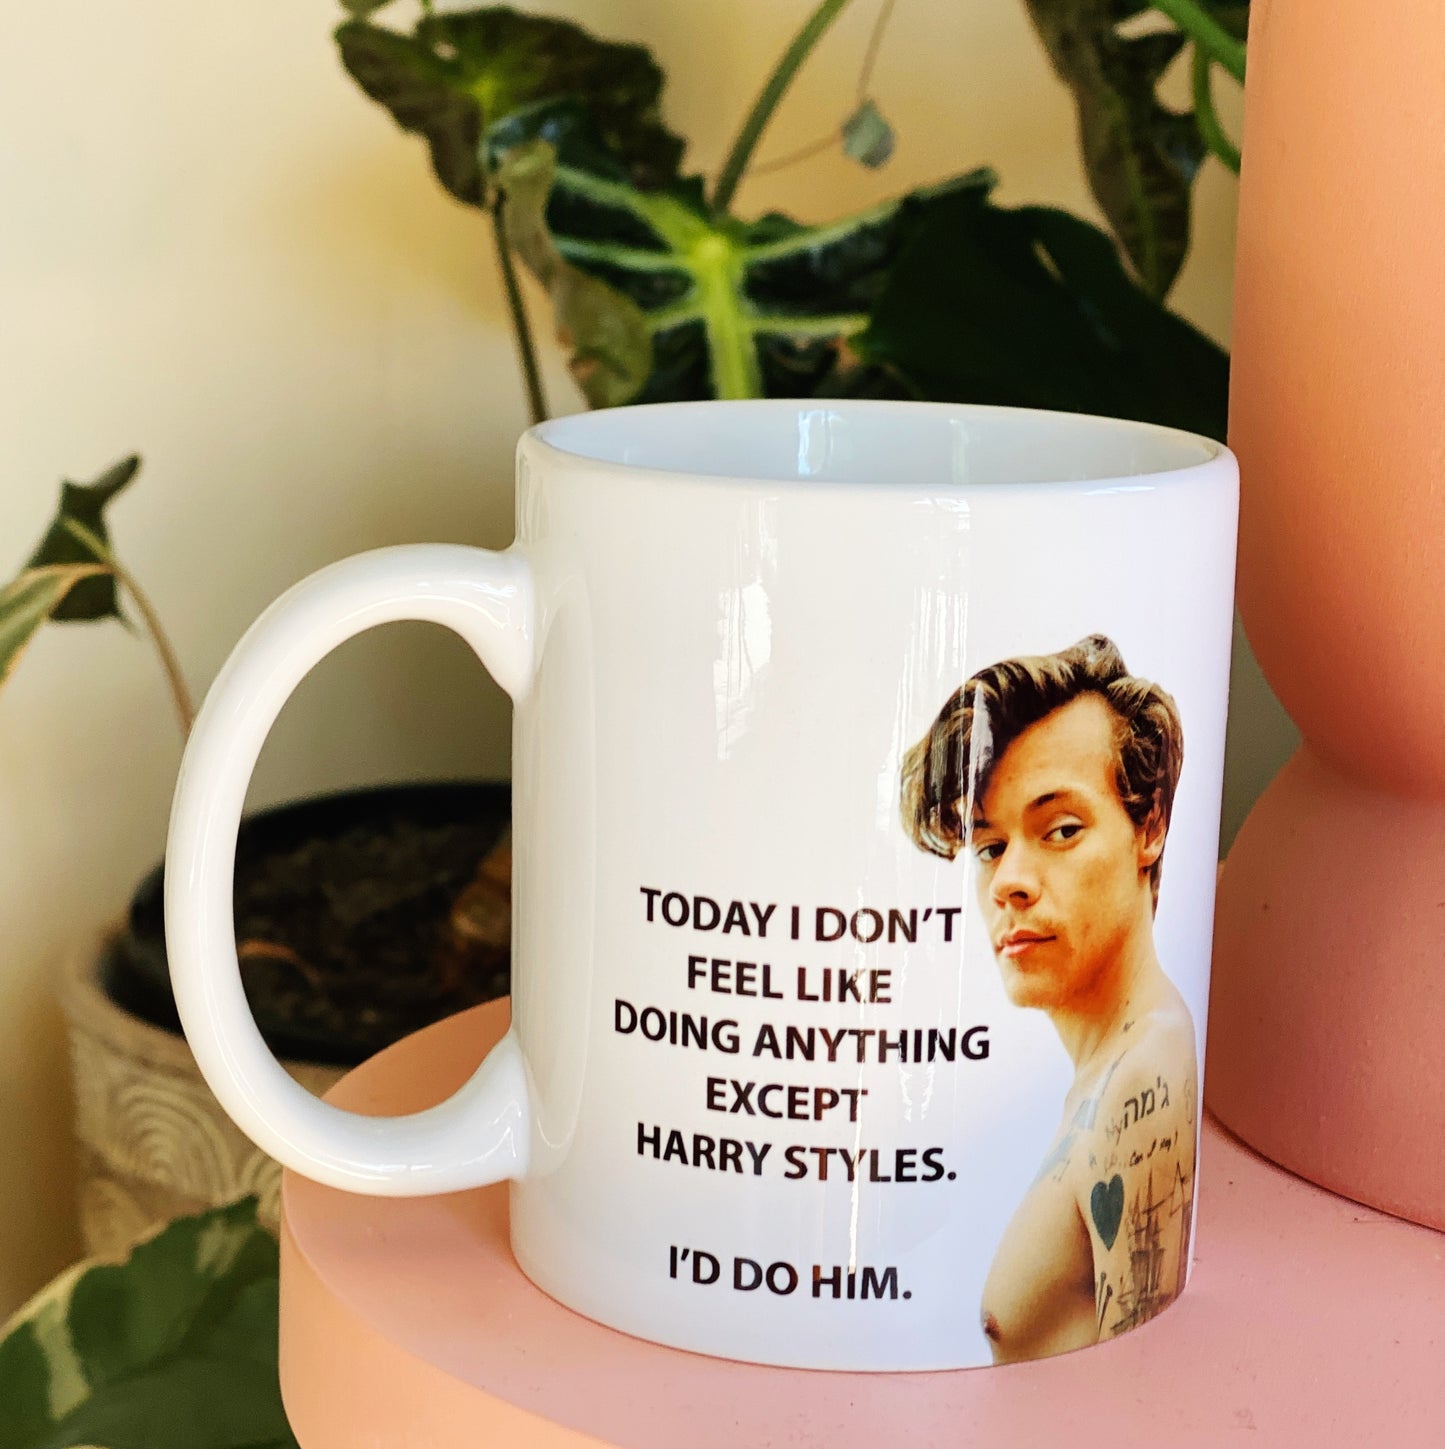 I’d do Harry styles mug